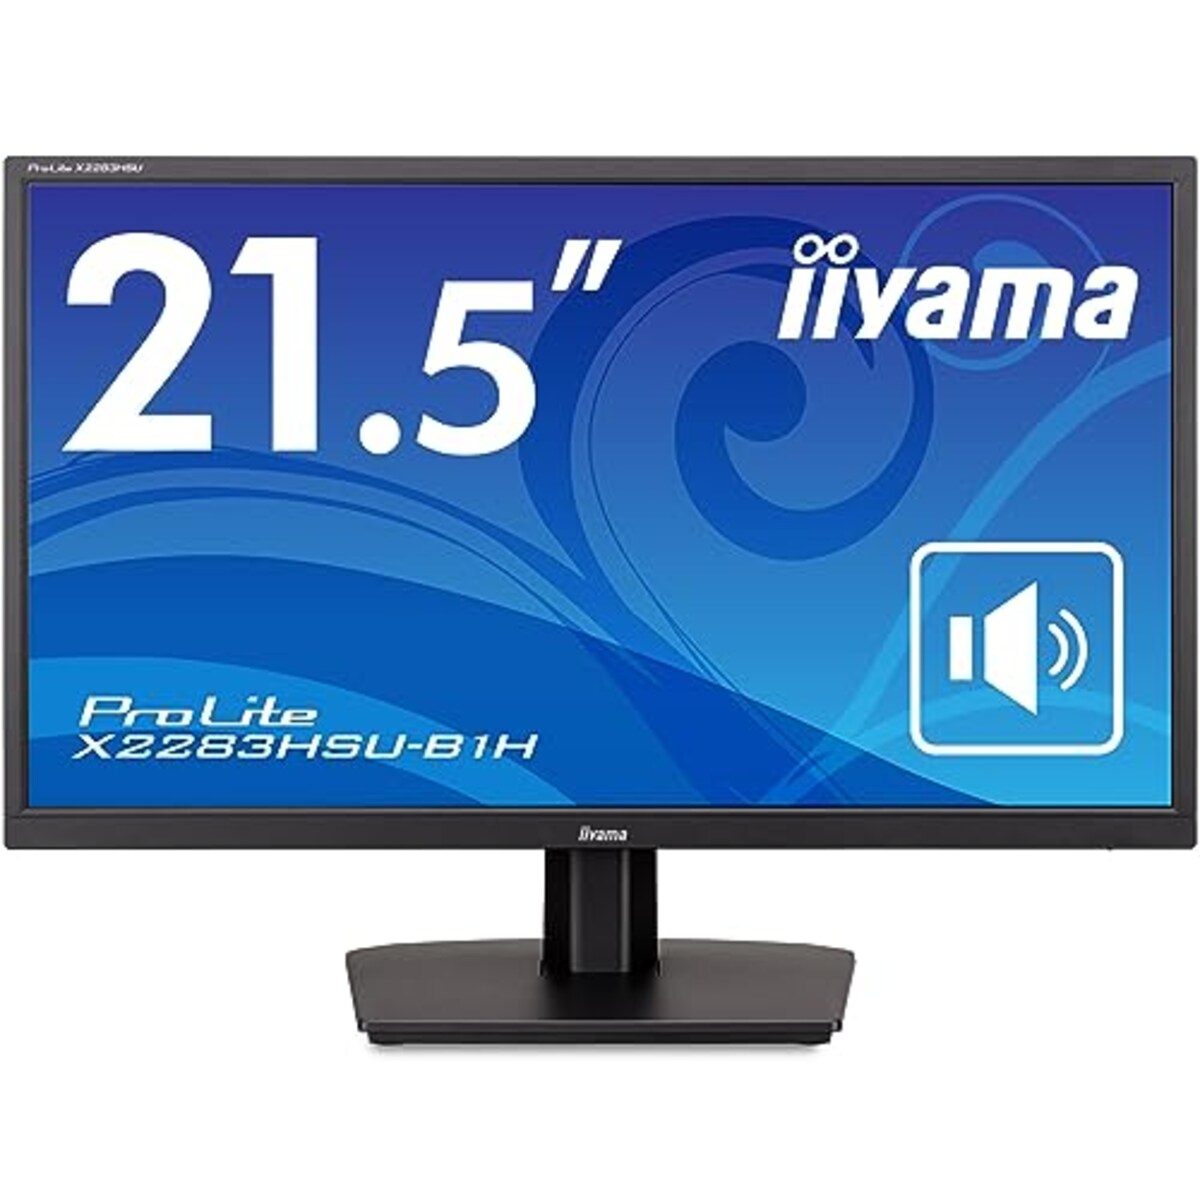 マウスコンピューター iiyama モニター ディスプレイ 21.5インチ フルHD VA方式 DisplayPort HDMI USB2.0×2 3年保証 国内サポート X2283HSU-B1H